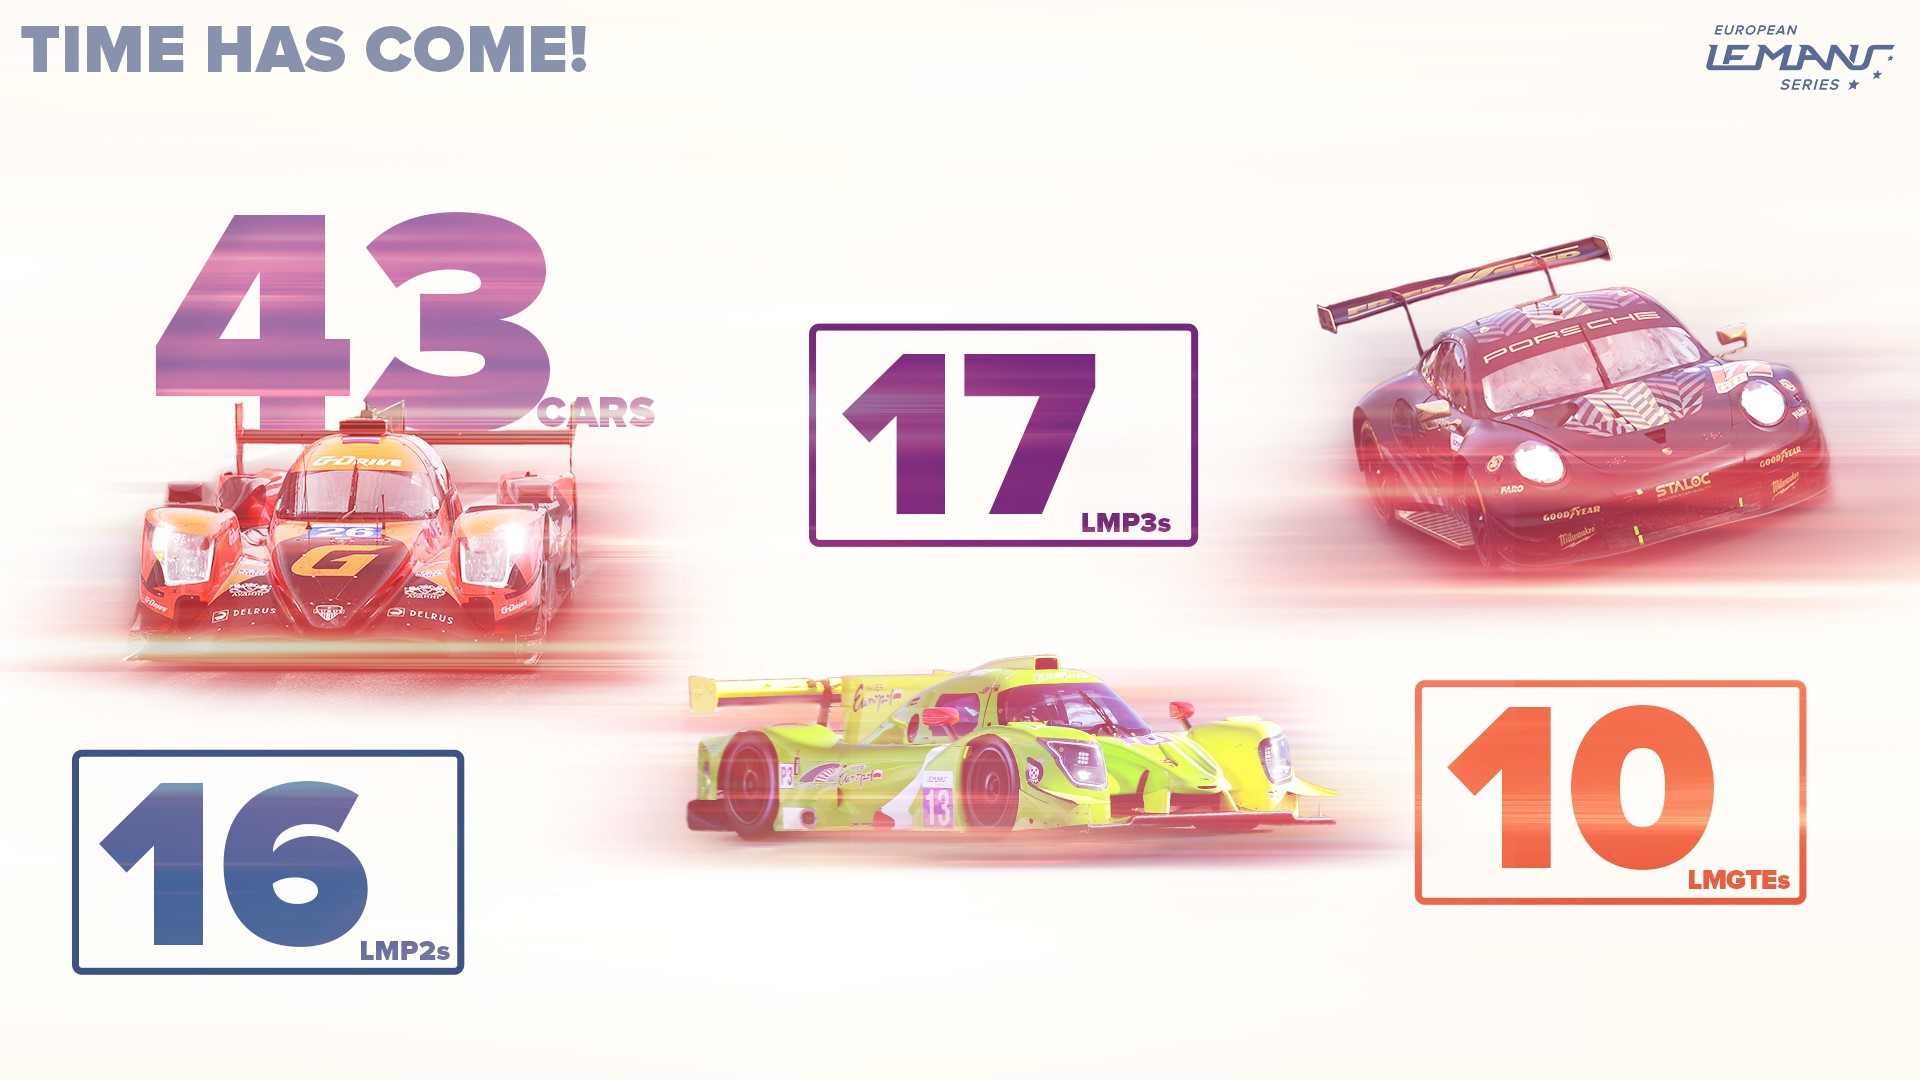 Temporada 2021 do European Le Mans Series com 43 carros